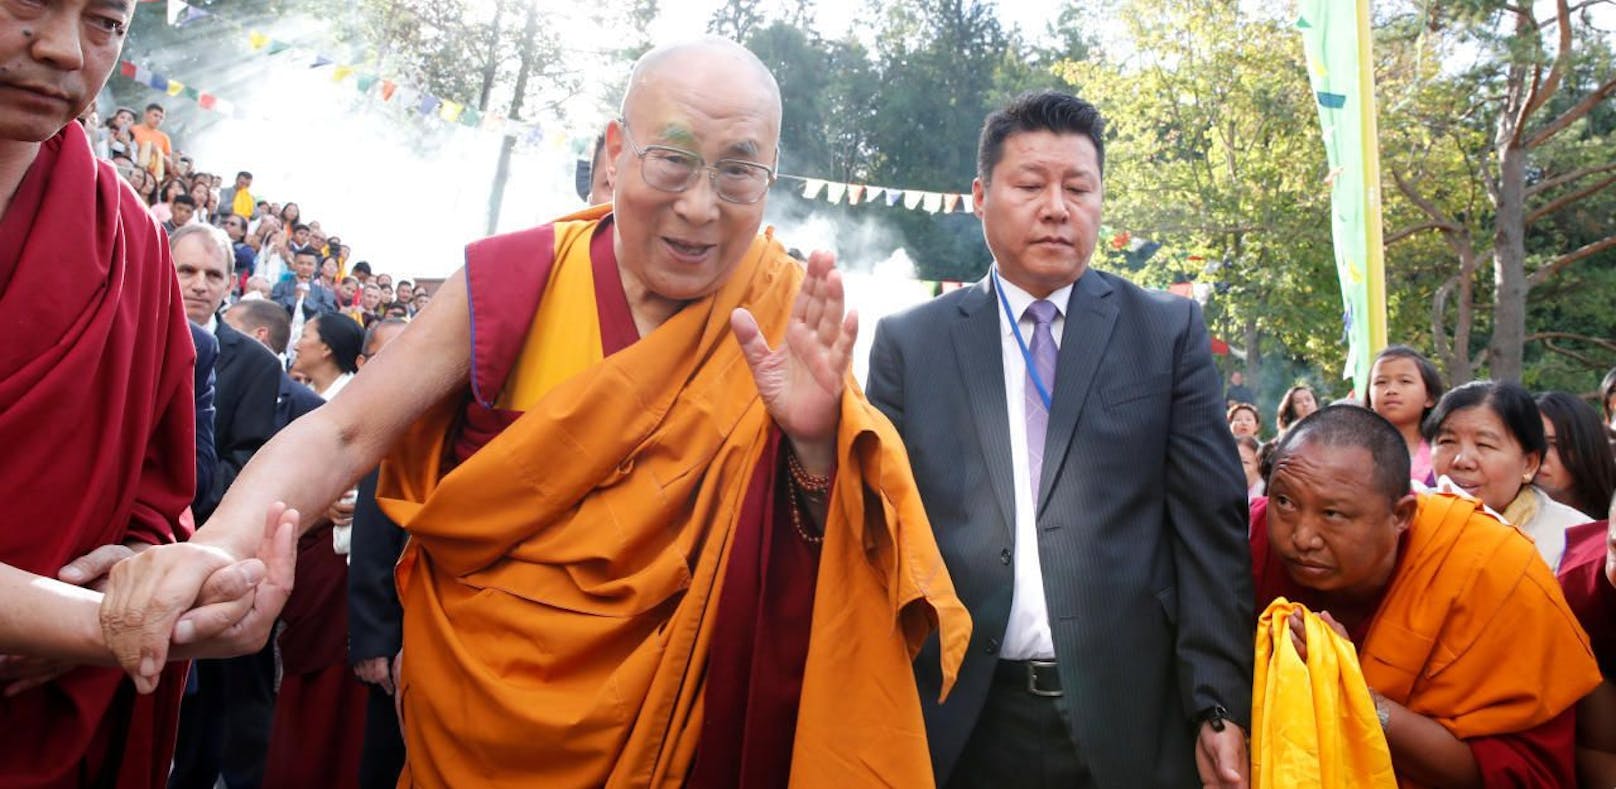 Tenzin Gyatso, besser bekannt als Dalai Lama